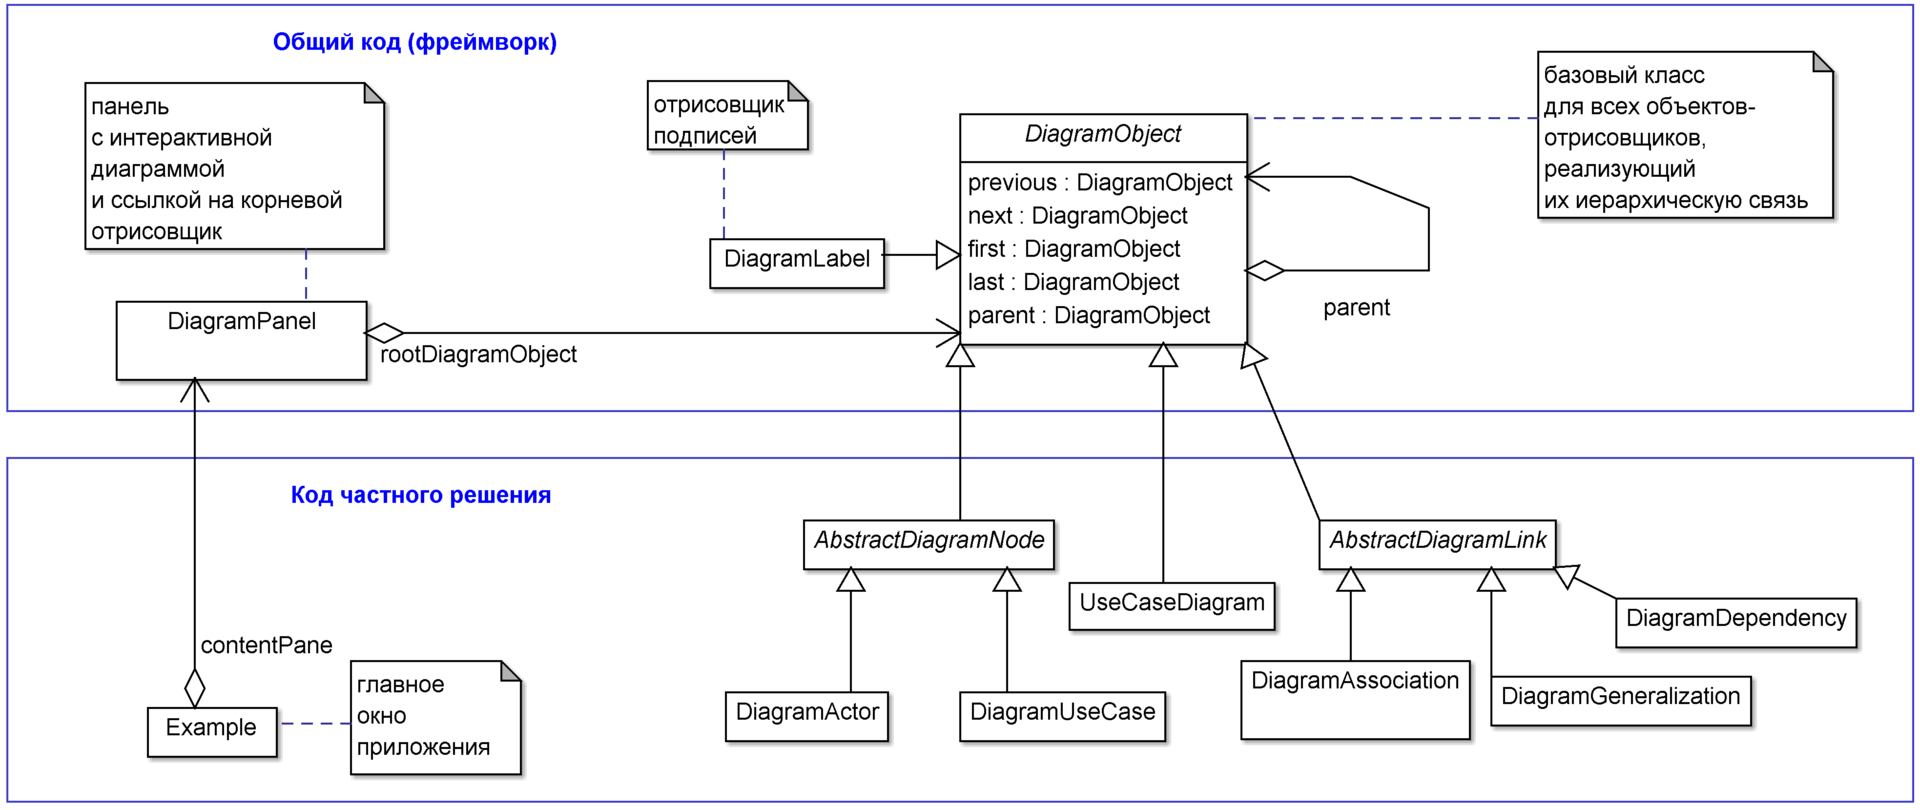 Реализация интерактивных диаграмм с помощью ООП на примере прототипа редактора UML-диаграмм. Часть 1 - 7